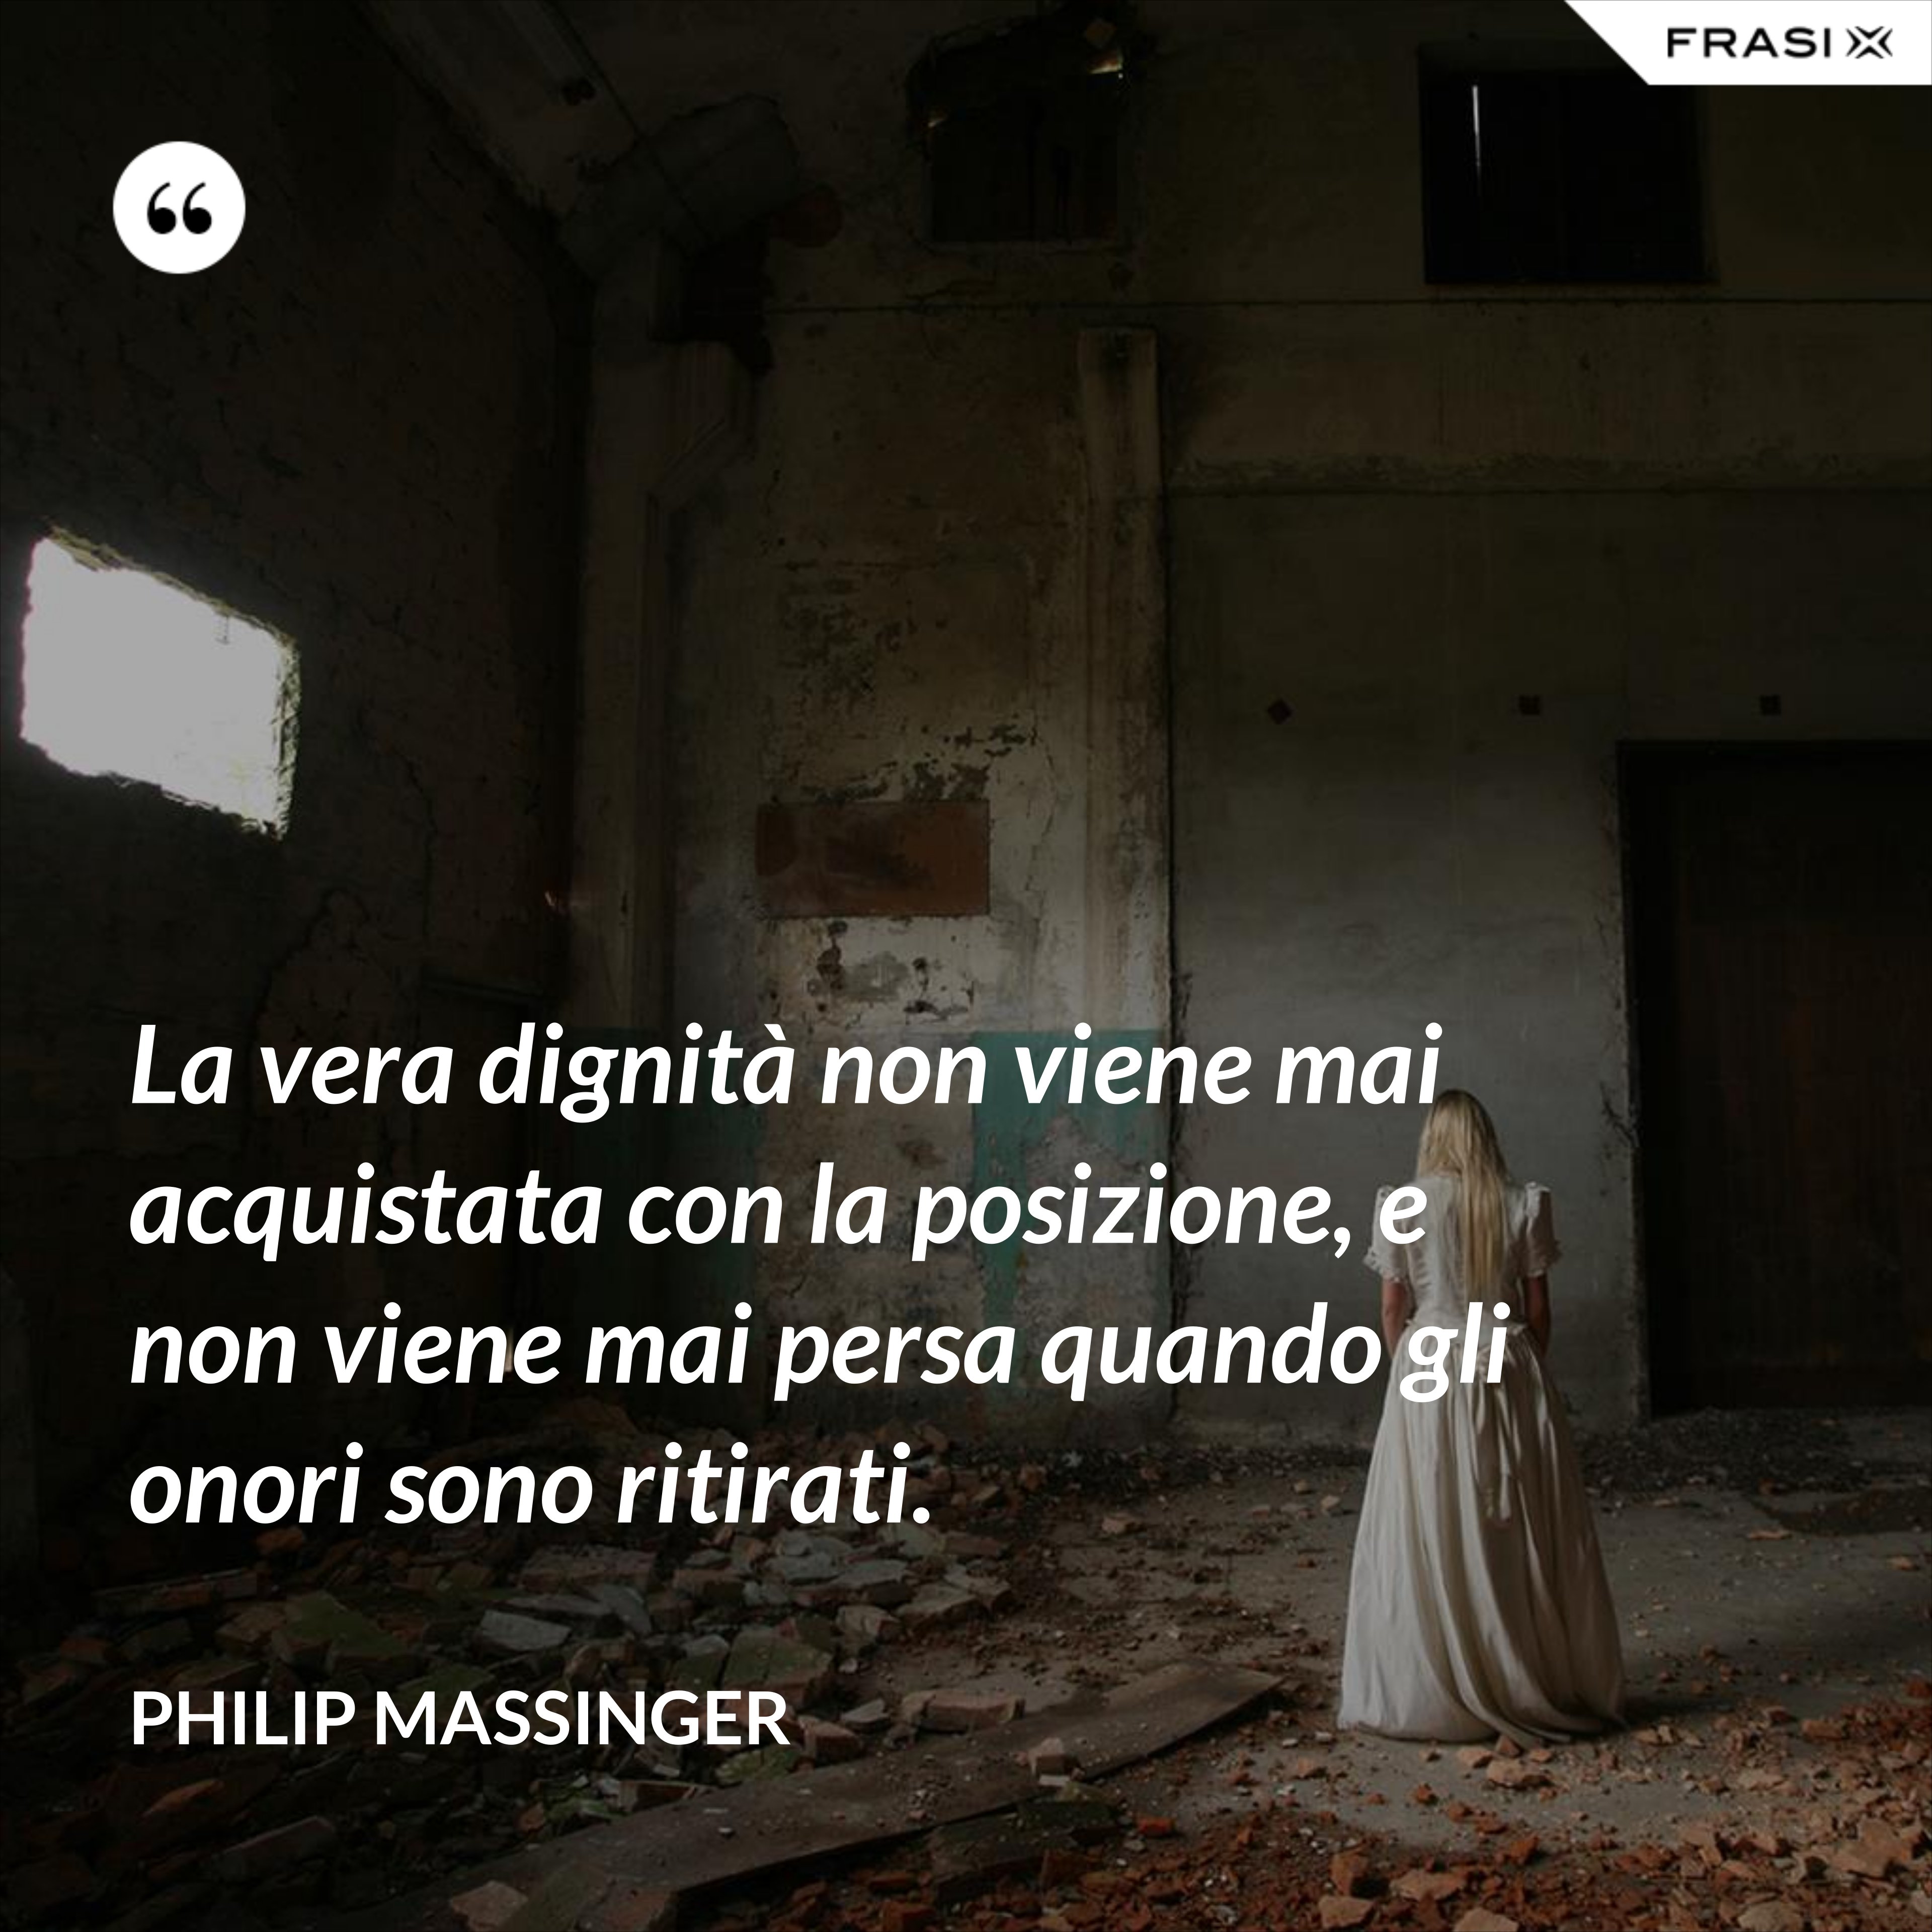 La vera dignità non viene mai acquistata con la posizione, e non viene mai persa quando gli onori sono ritirati. - Philip Massinger